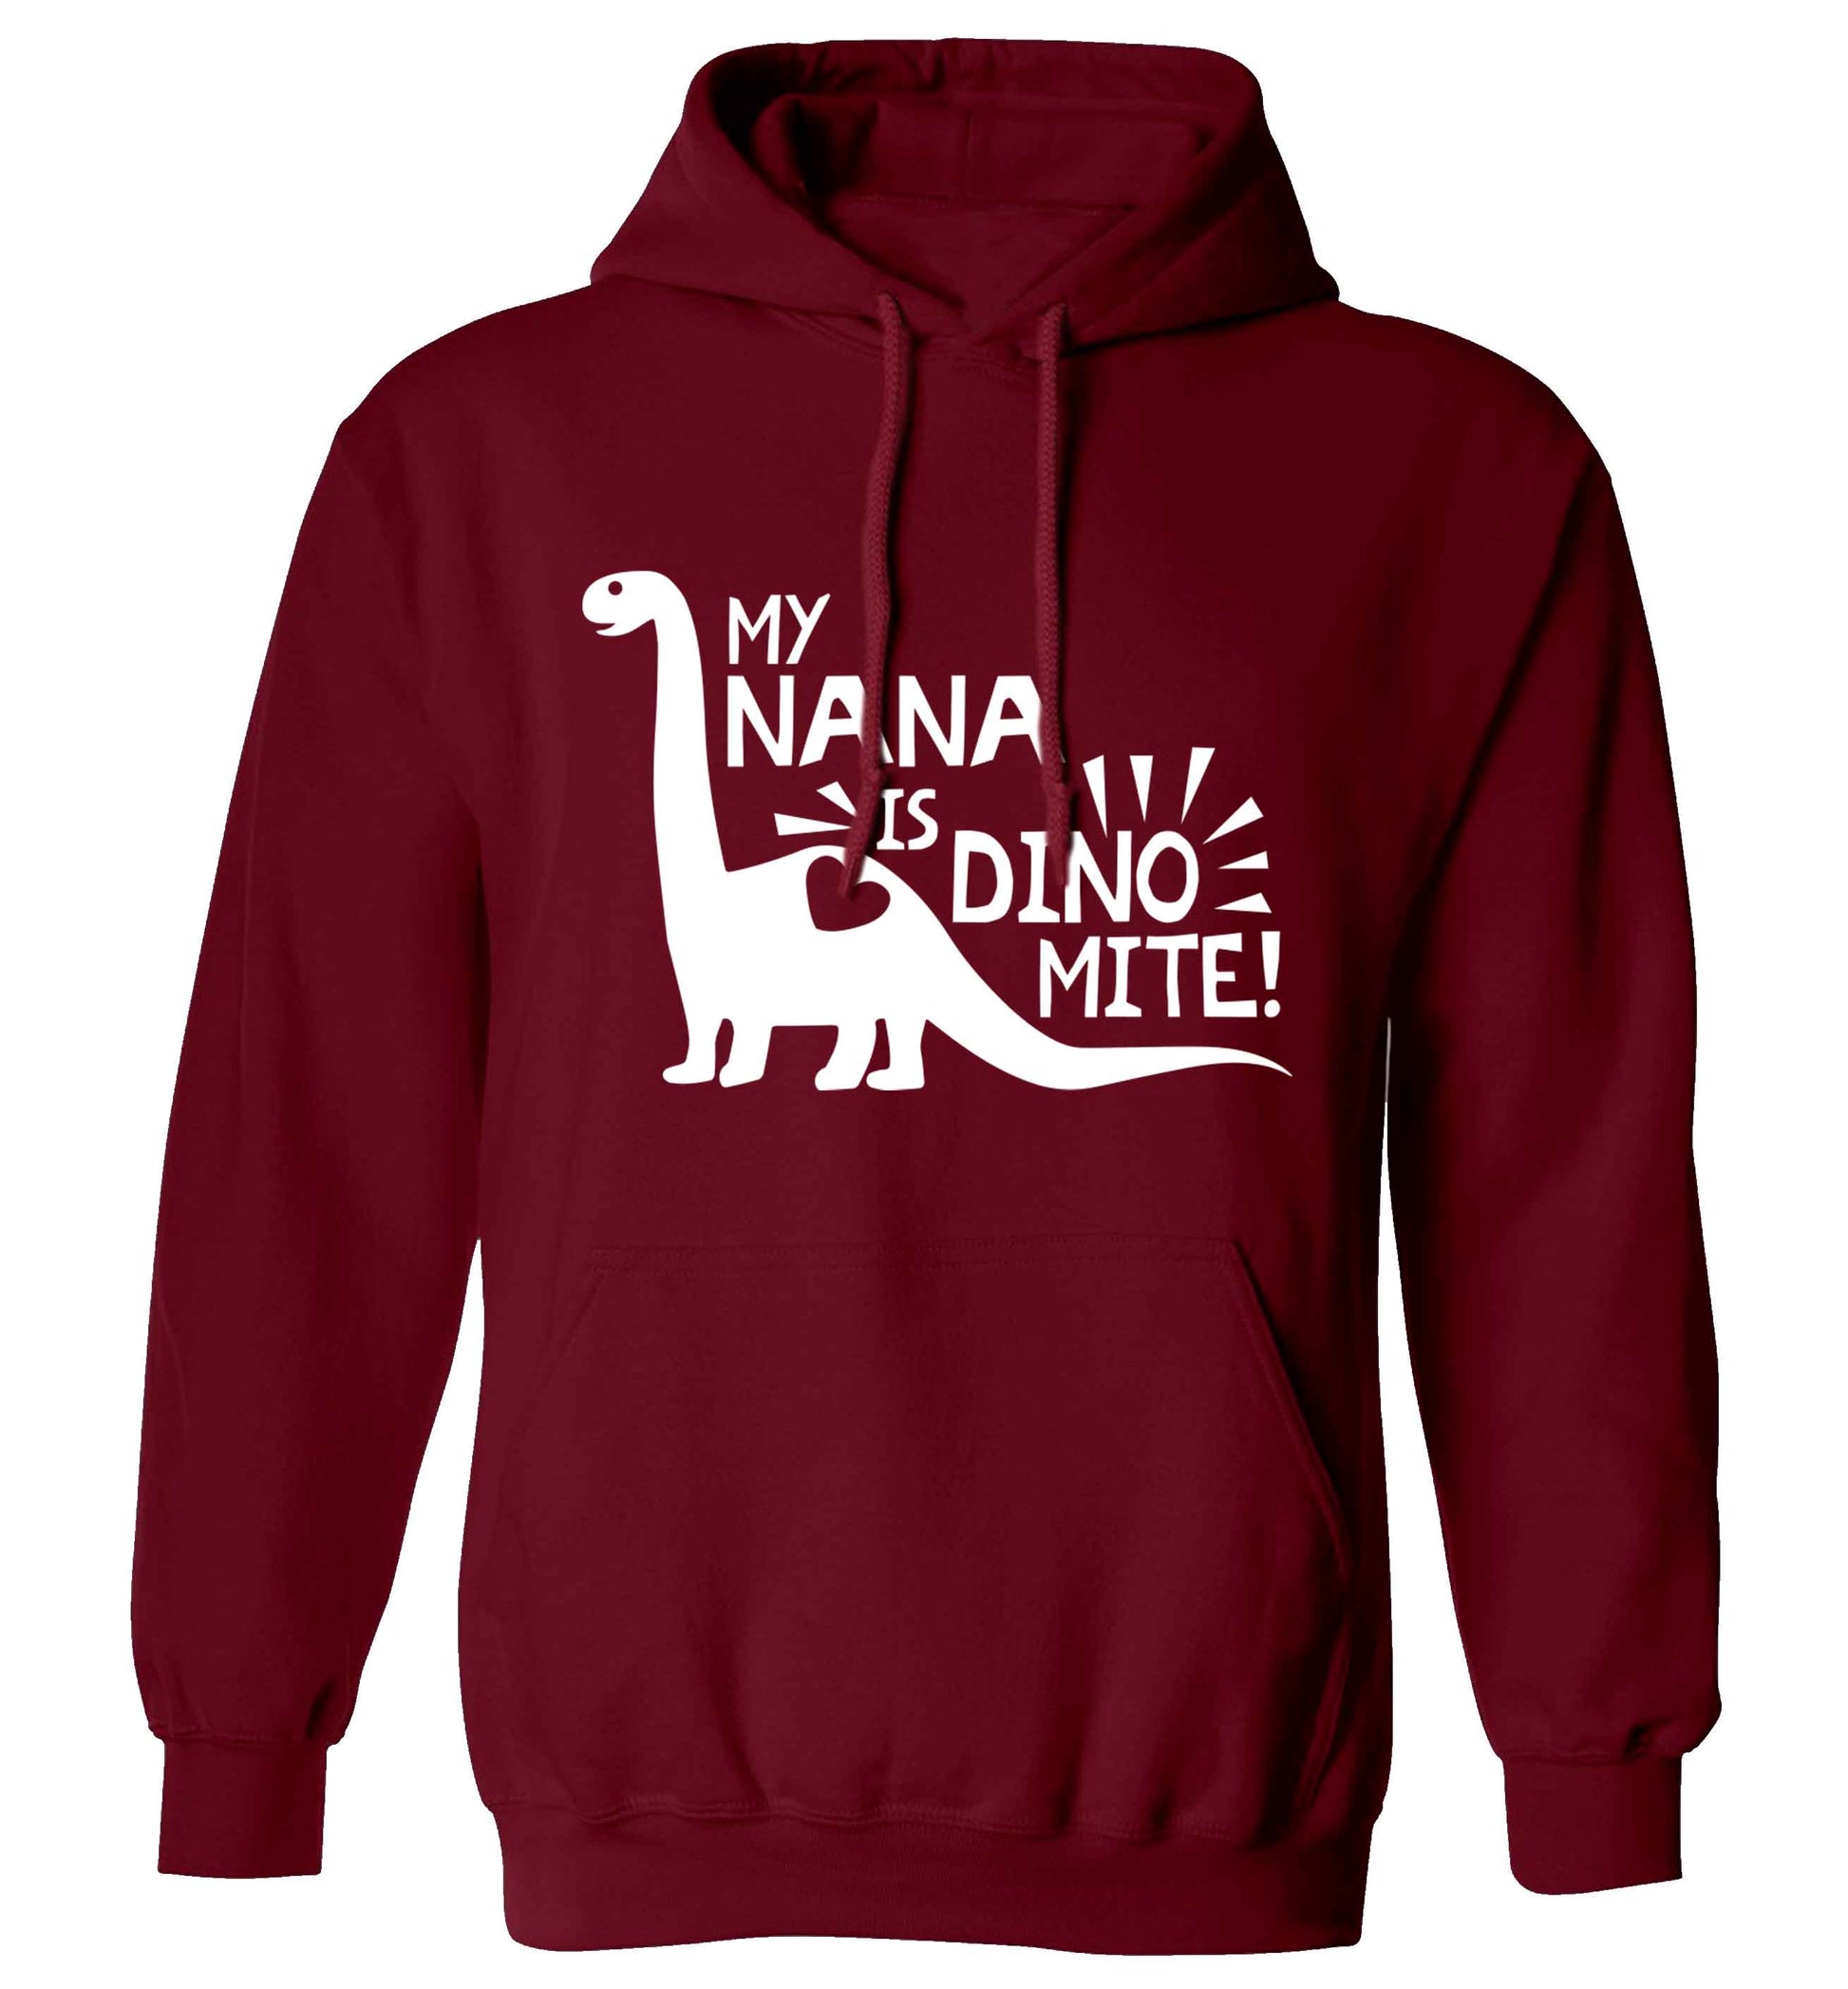 My nana is dinomite! adults unisex maroon hoodie 2XL